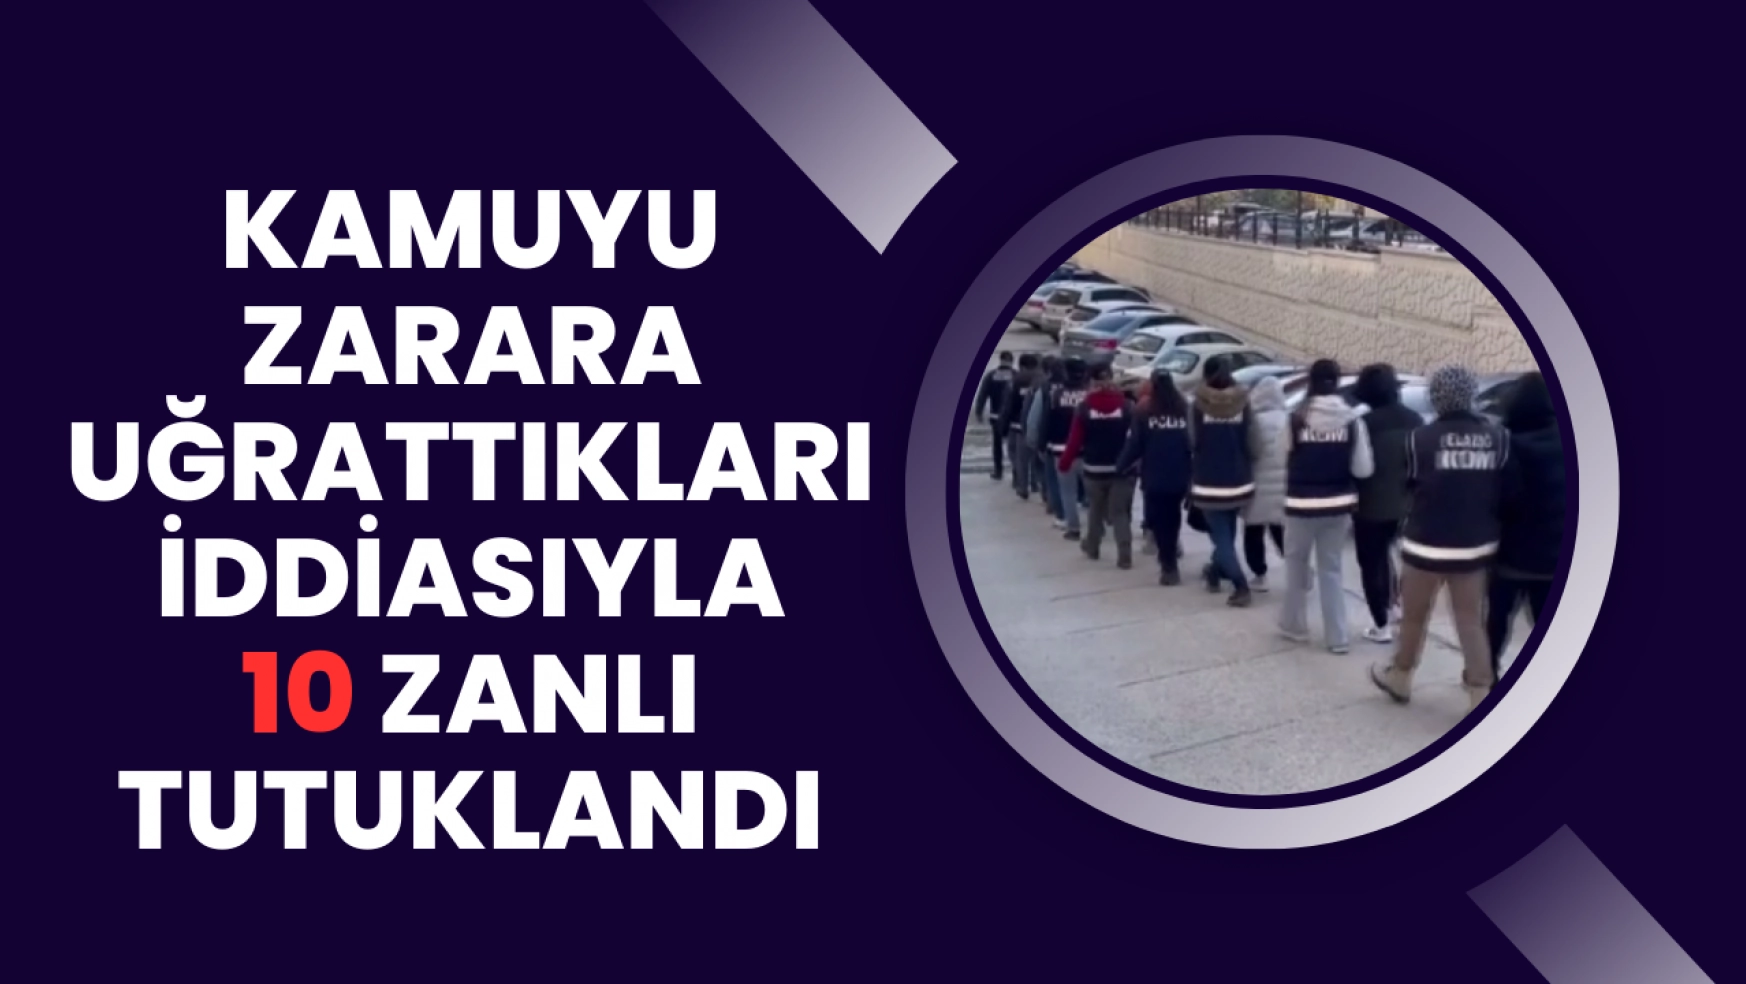 Elazığ'da kamuyu zarara uğrattıkları iddiasıyla 10 zanlı tutuklandı